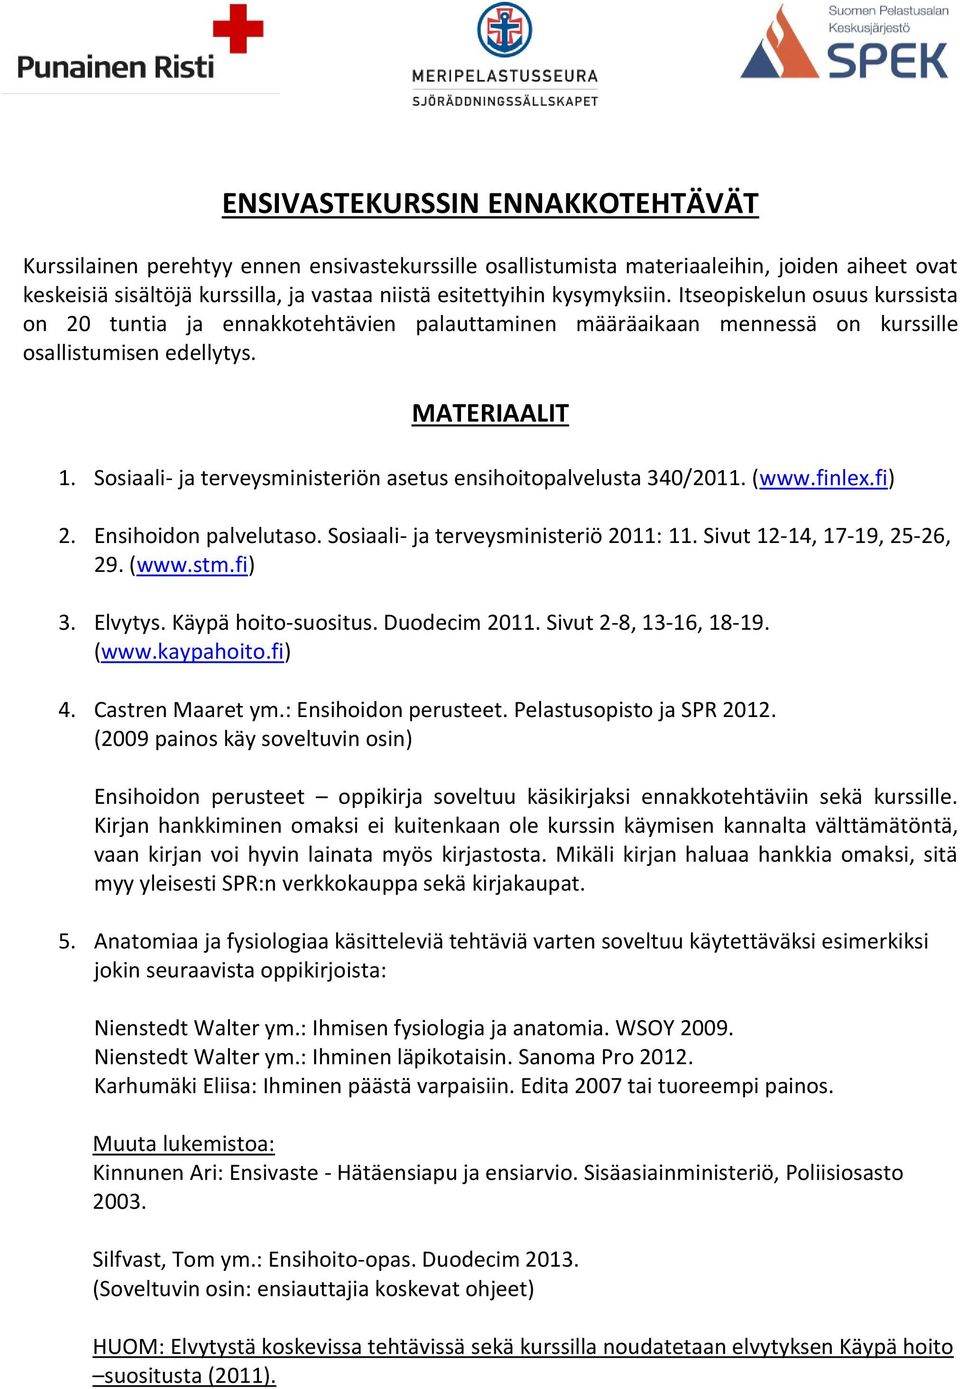 Sosiaali- ja terveysministeriön asetus ensihoitopalvelusta 340/2011. (www.finlex.fi) 2. Ensihoidon palvelutaso. Sosiaali- ja terveysministeriö 2011: 11. Sivut 12-14, 17-19, 25-26, 29. (www.stm.fi) 3.